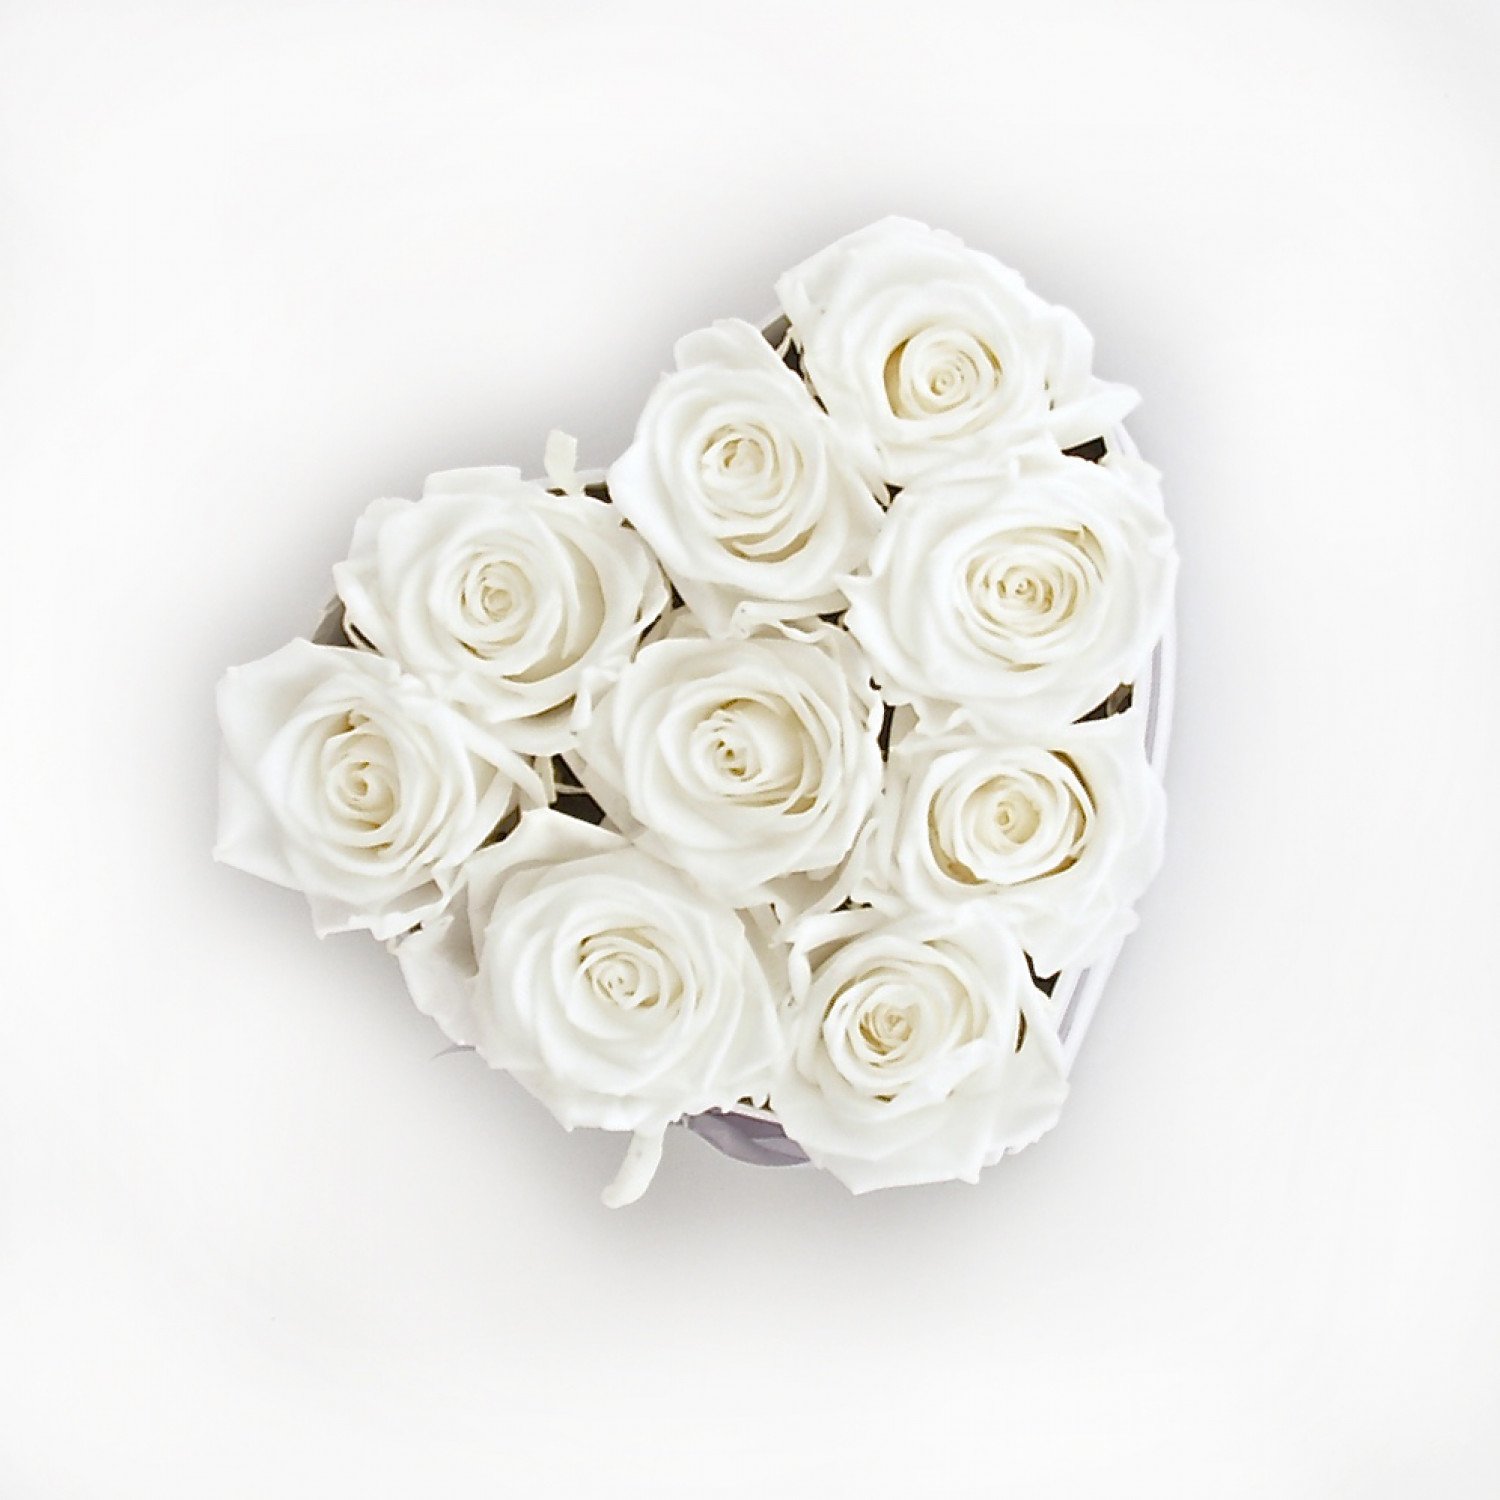 Herz Flowerbox small: Infinity Rosen in weiß